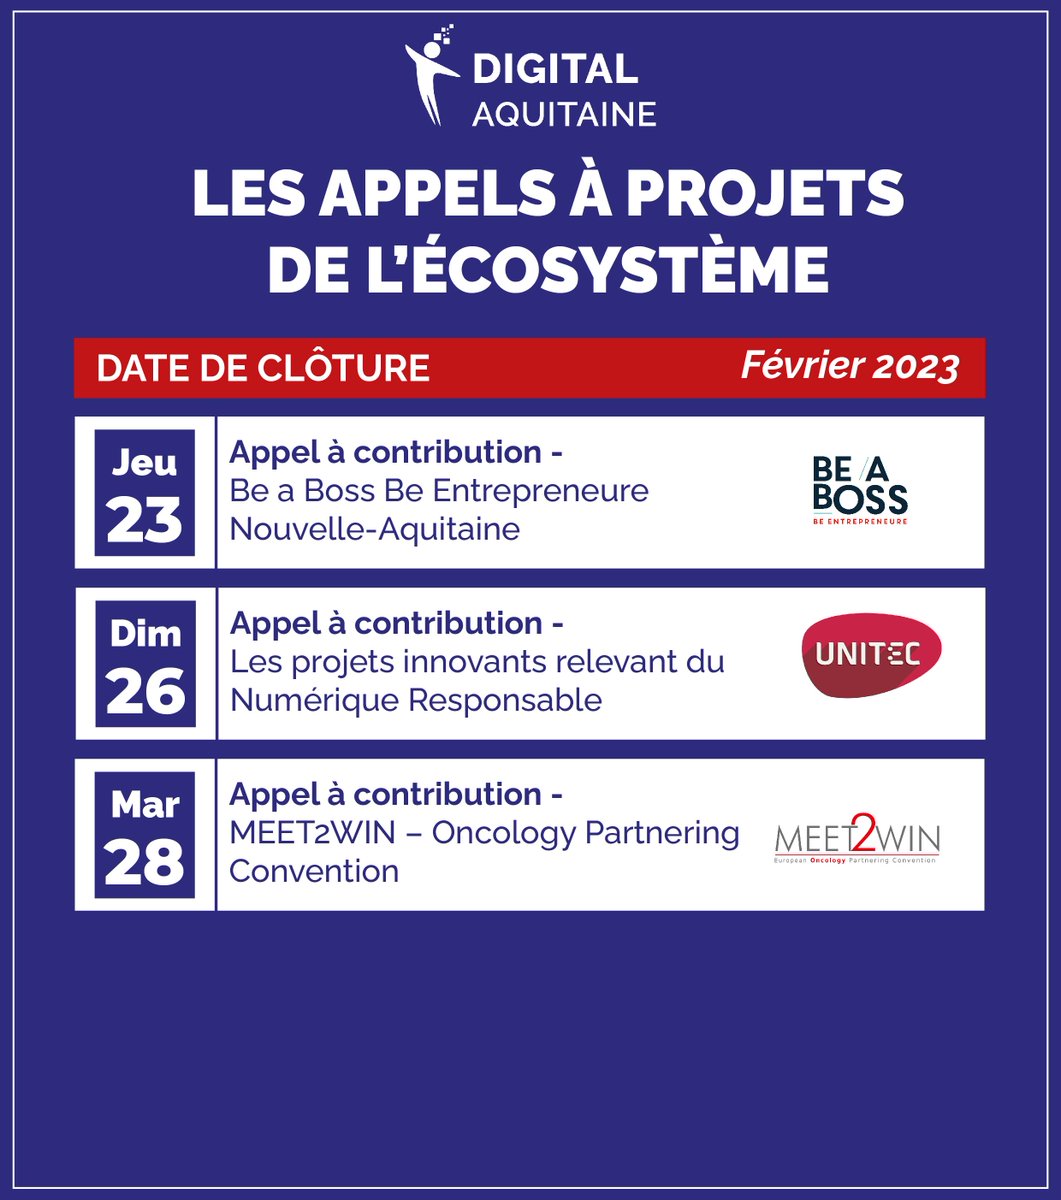 Les appels à projets de l'écosystème du mois de Février 2023 📢

Les acteurs du numériques en Nouvelle-Aquitaine ont peut être besoin de vous ? 👀

Découvrez les appels à projets qui se clôturent ce mois-ci !

#appelaprojet #appelacontribution #appelacandidature